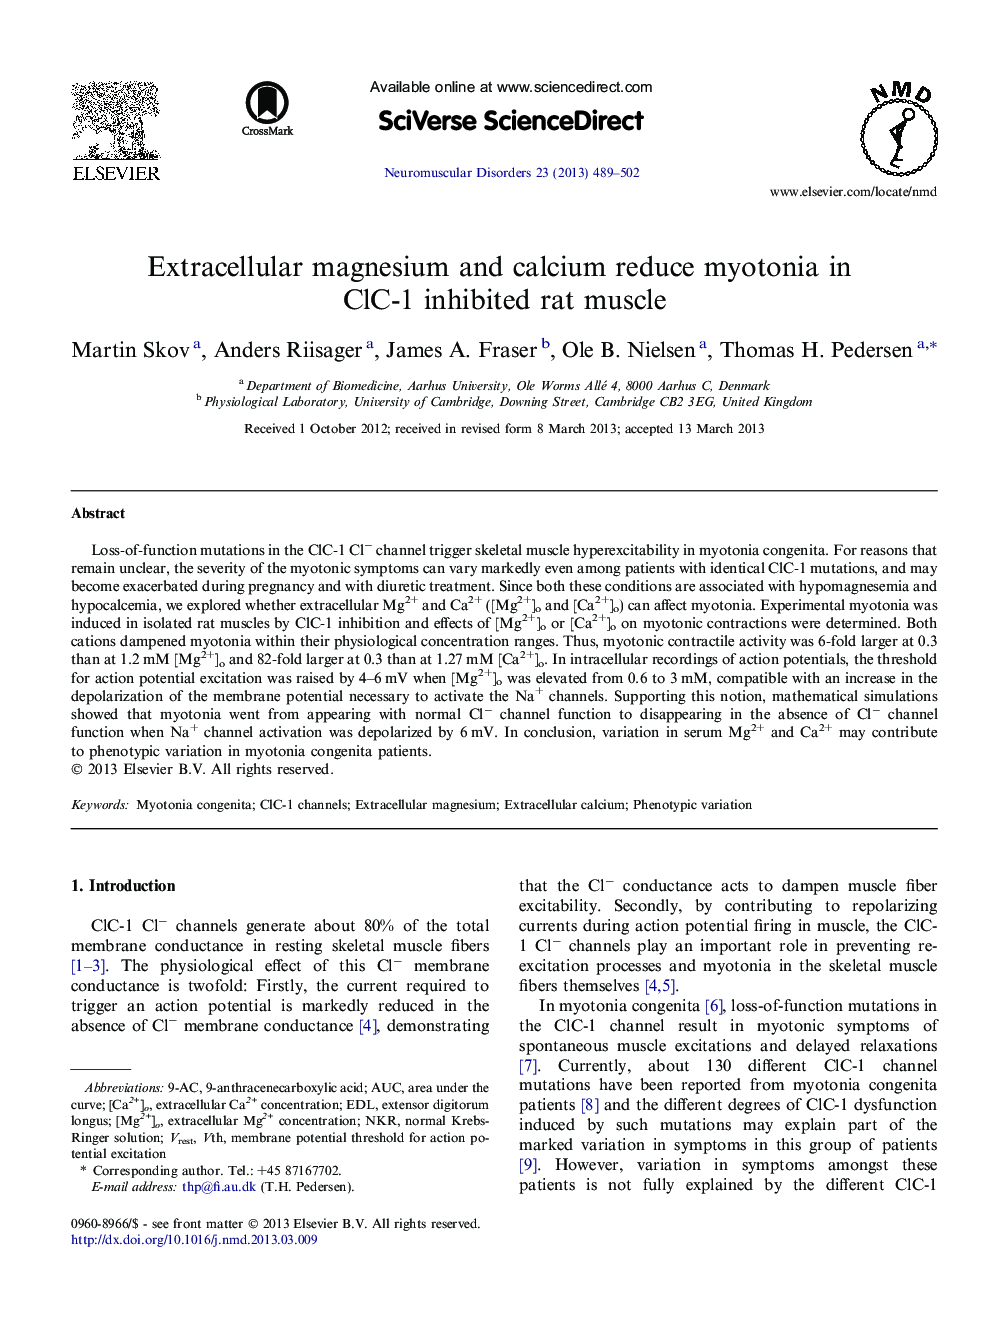 Extracellular magnesium and calcium reduce myotonia in ClC-1 inhibited rat muscle